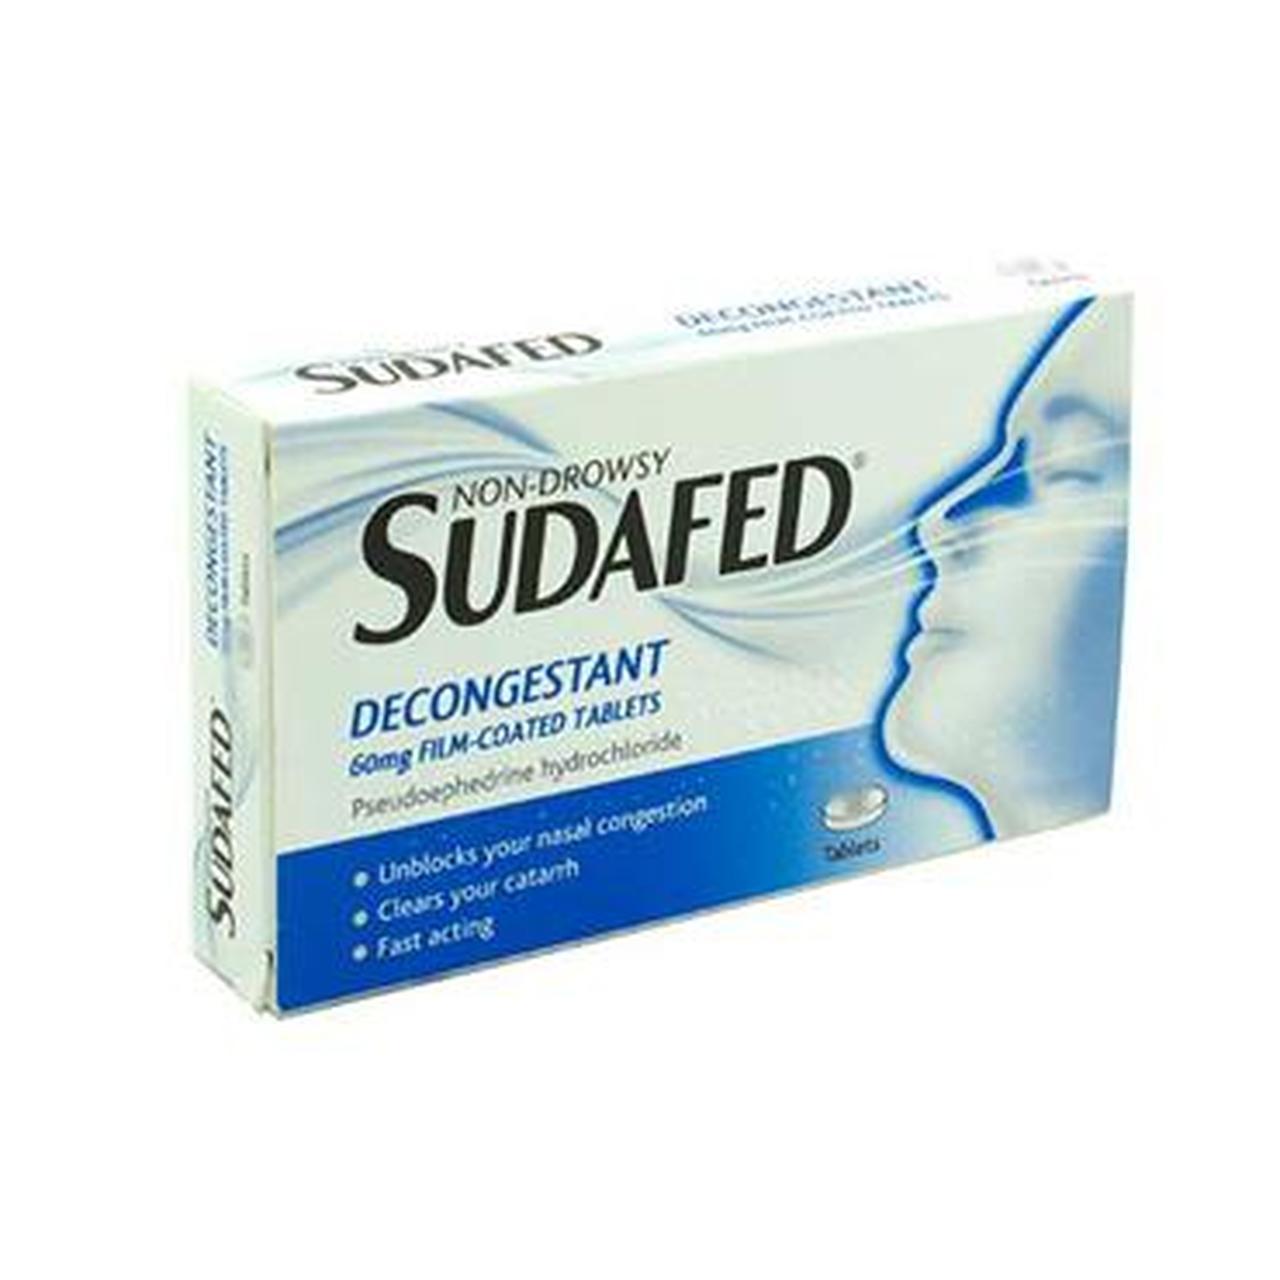 Sudafed Decongestant 60mg Tablets  12 Pack 